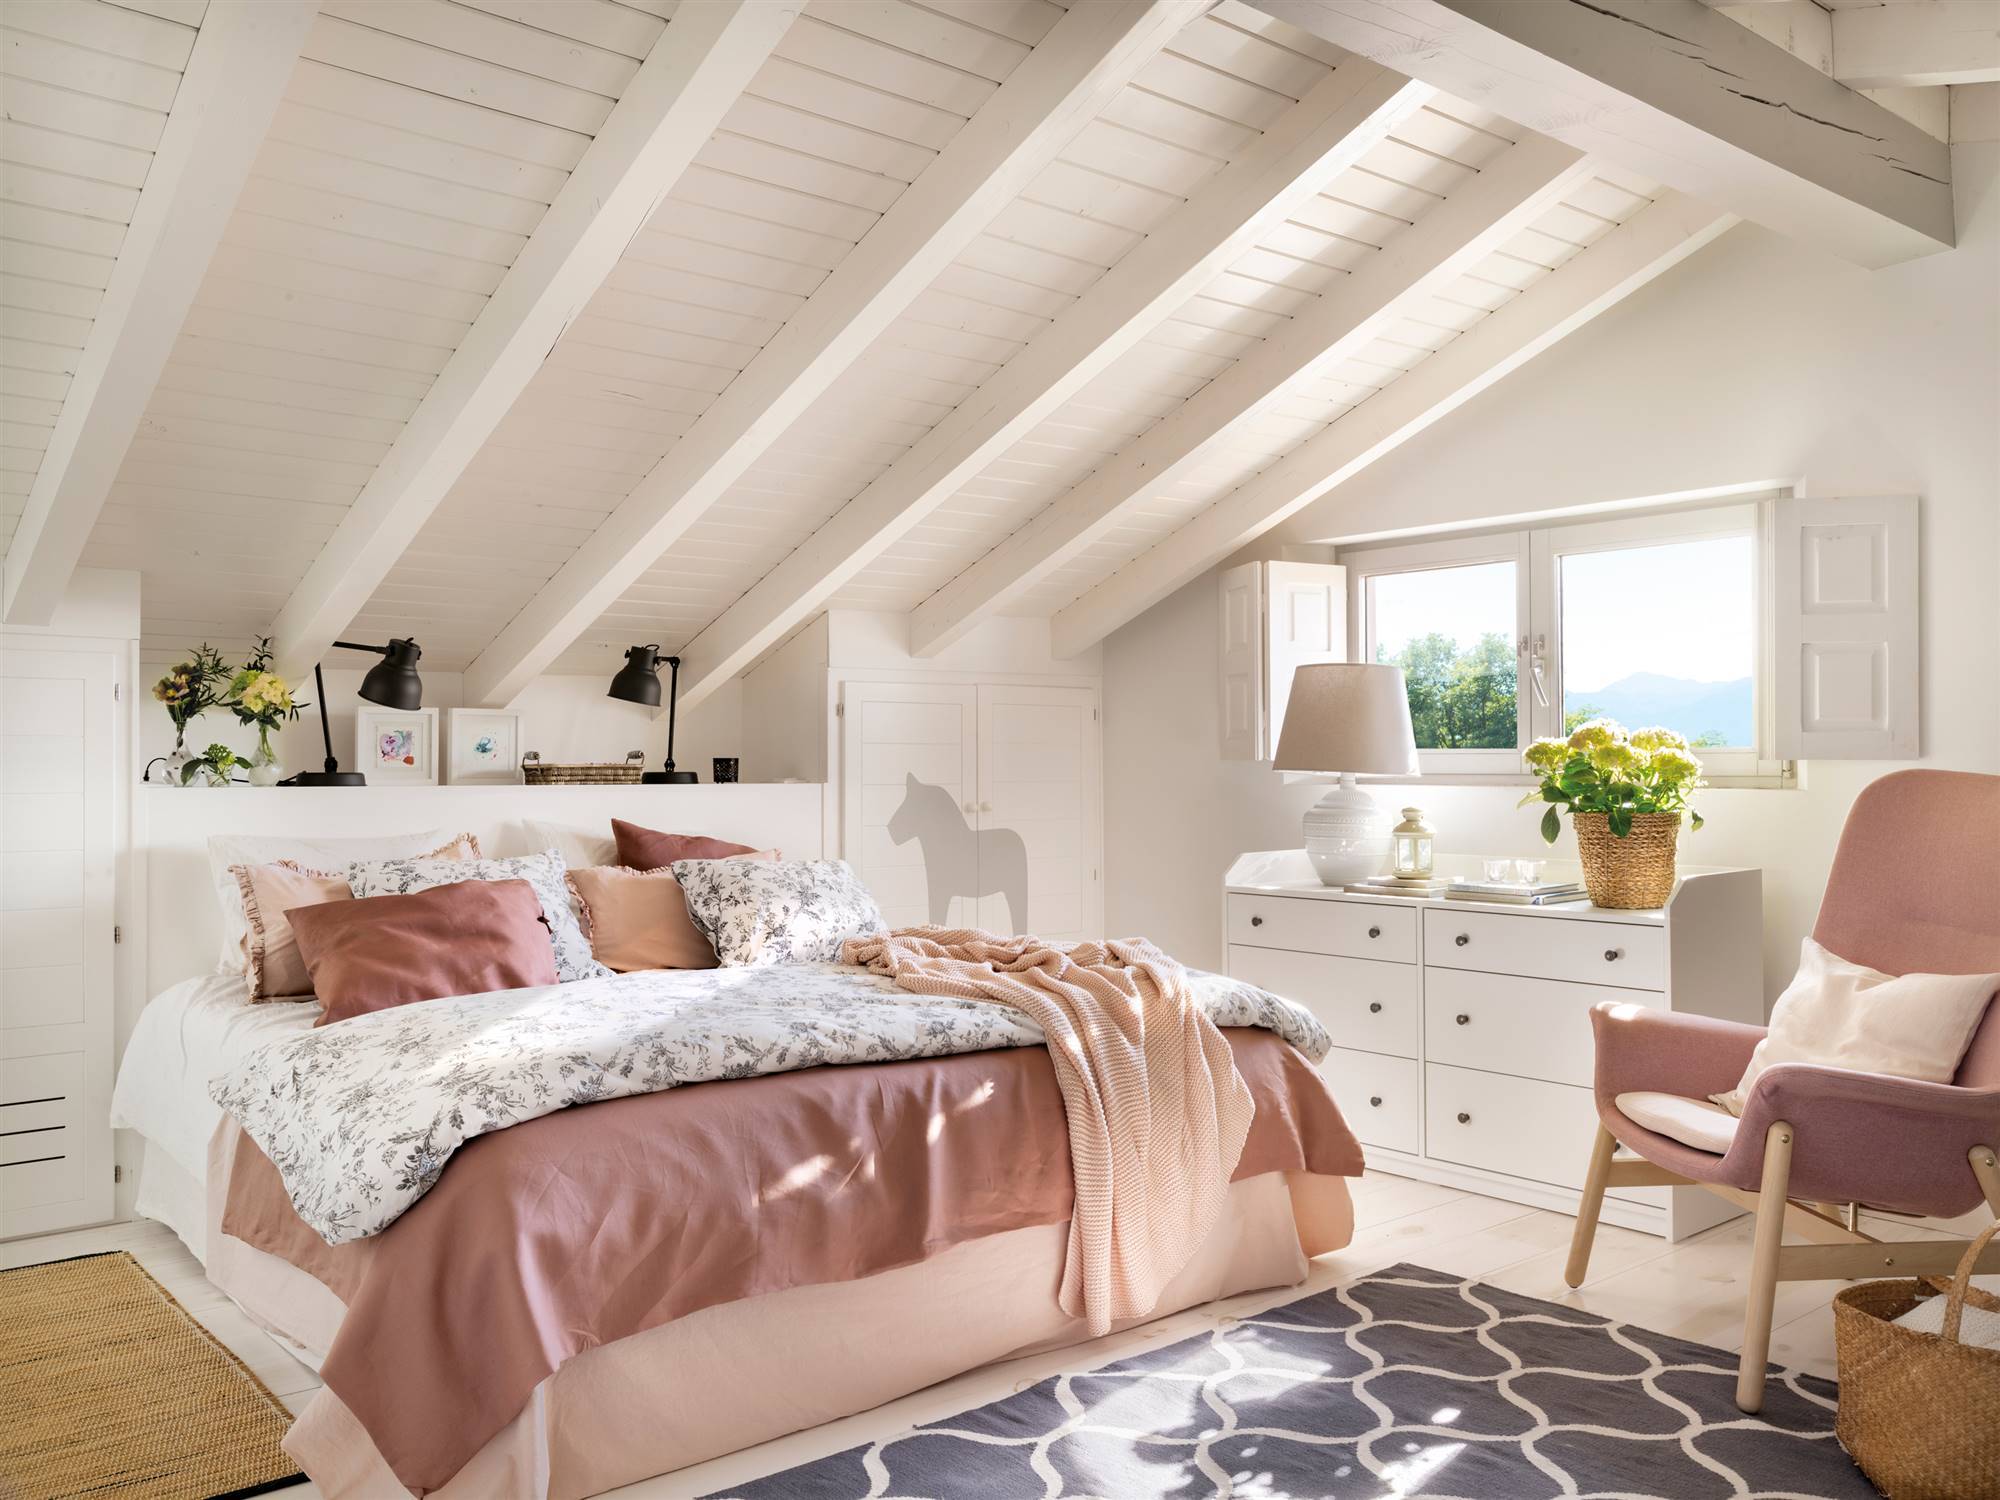 Dormitorio abuhardillado pintado en blanco con butaca rosa 00538485